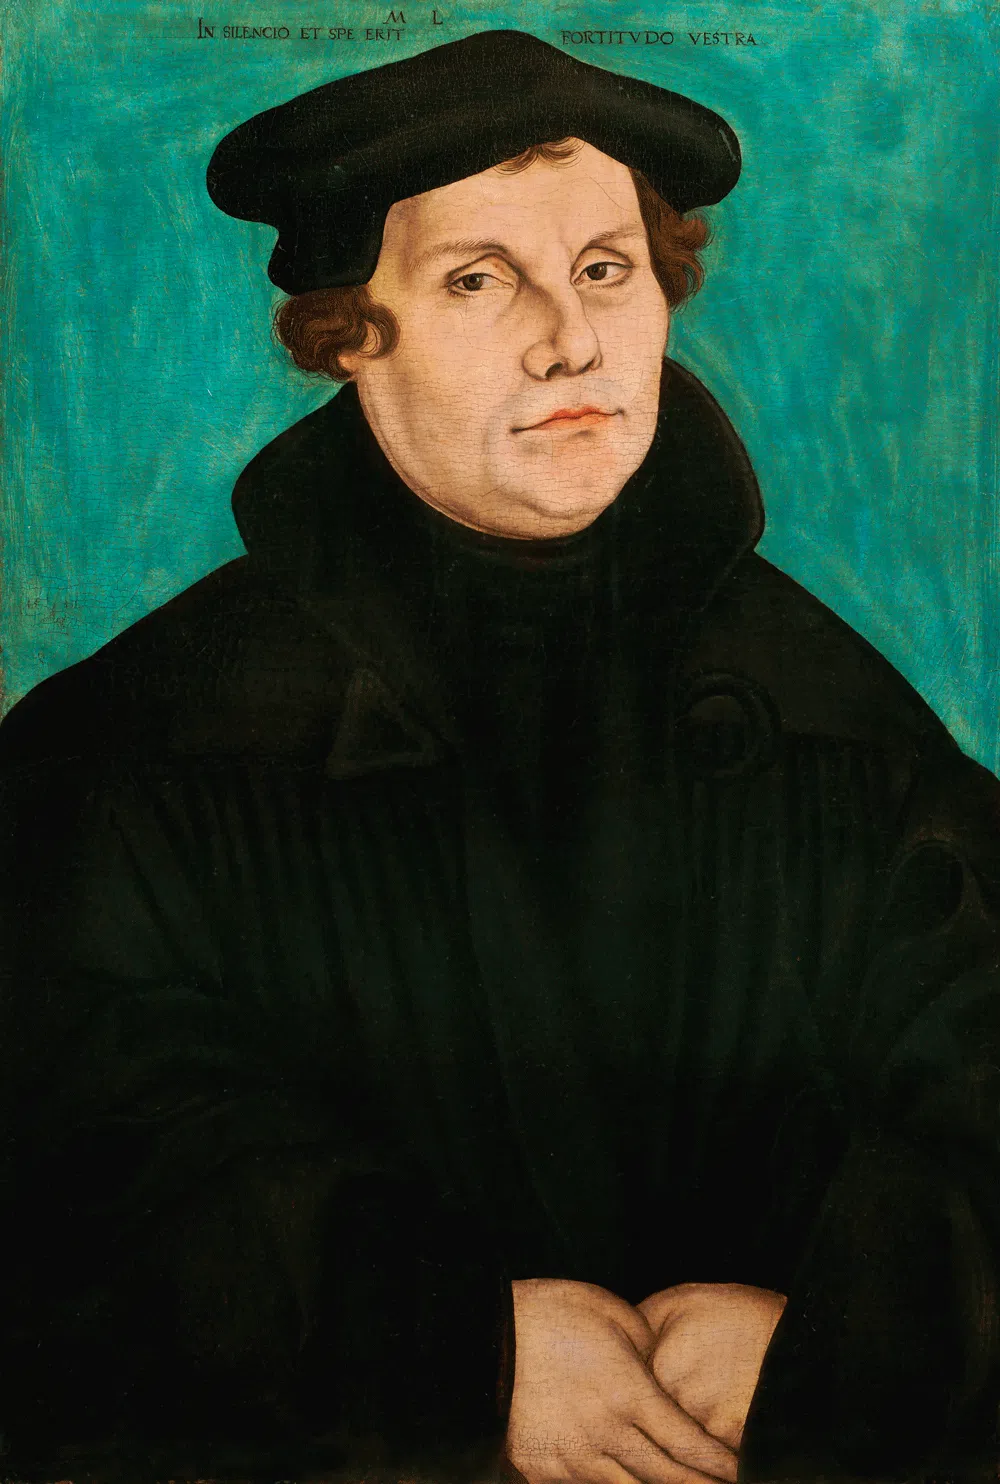 Porträt Martin Luthers von Lucas Cranach